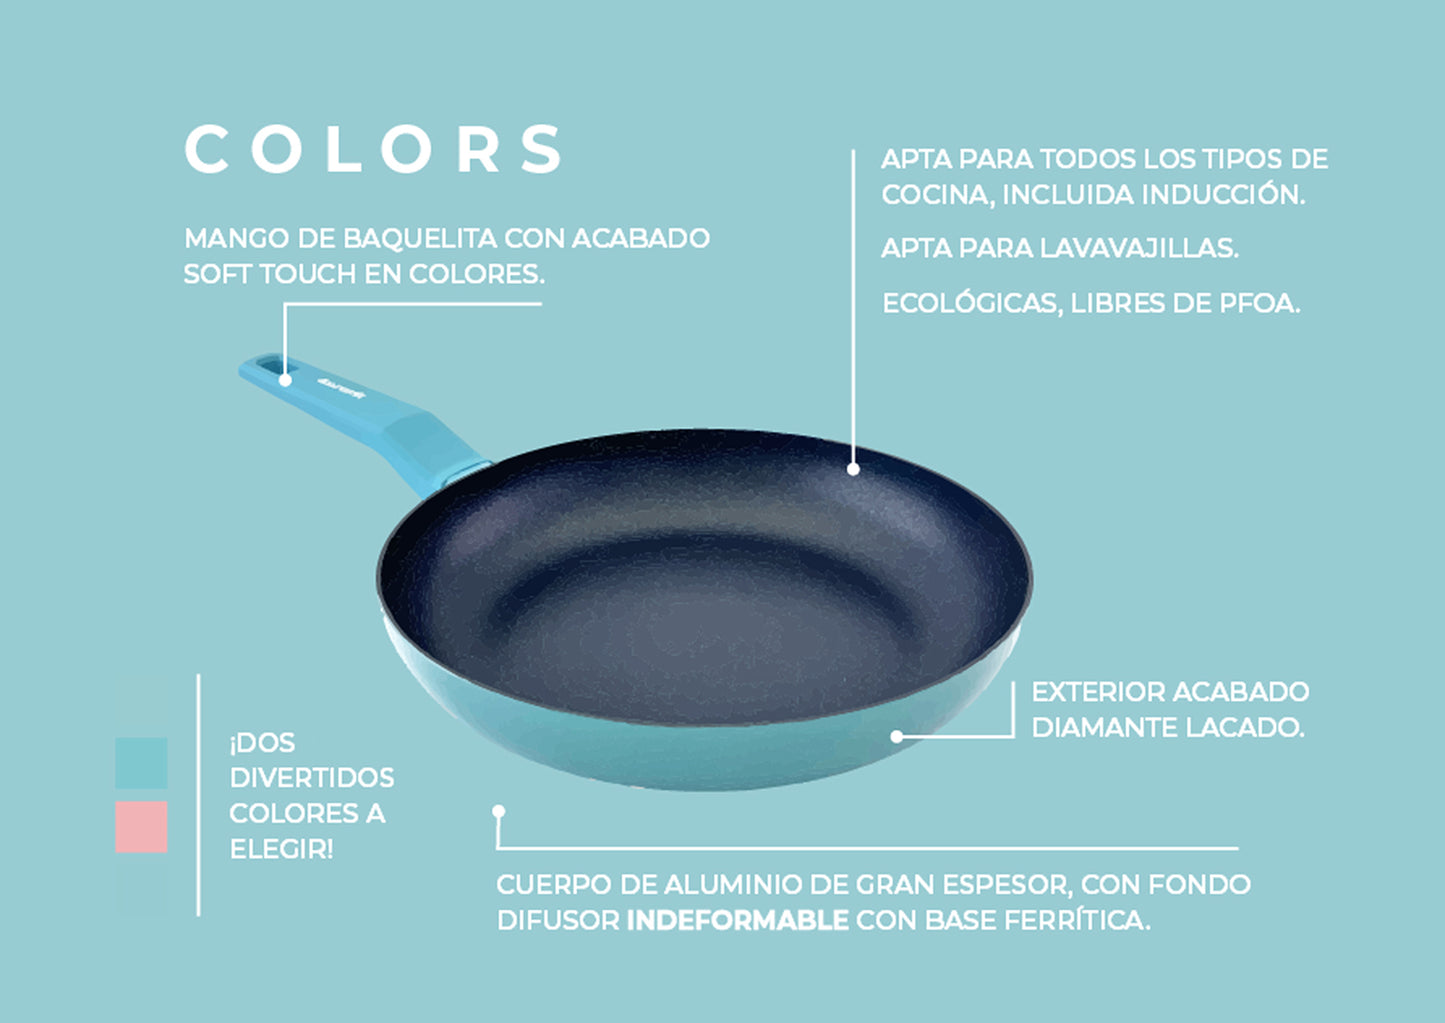 Cacerola COLORS azul cielo, apta para todo tipo de cocina incluso inducción